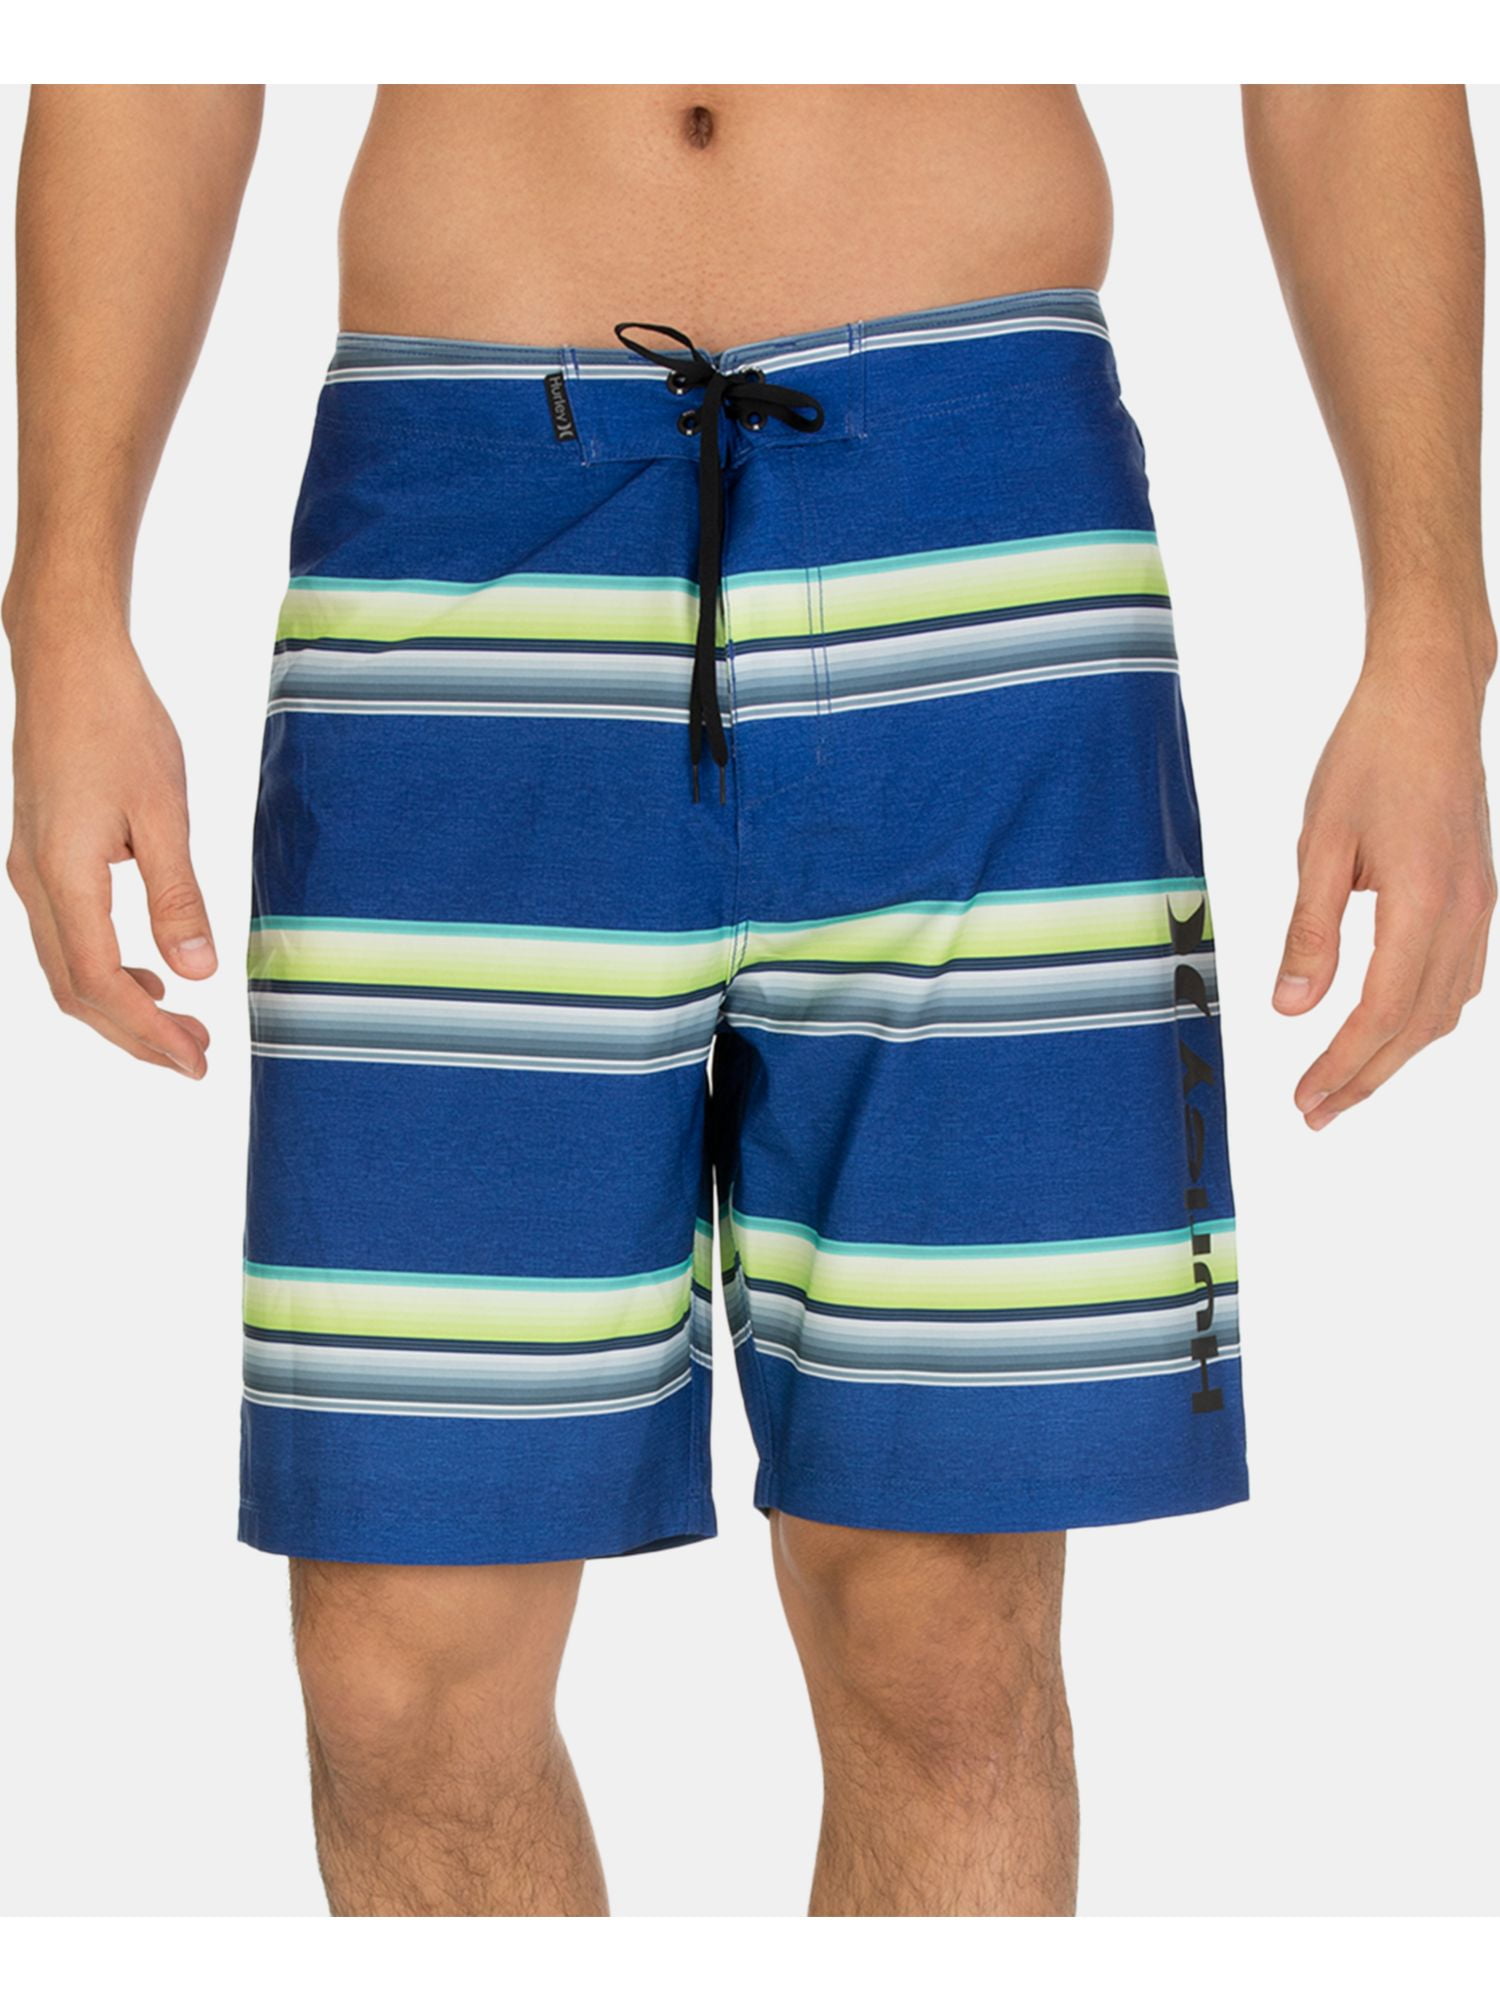 Shorts 39. Шорты Hurley 164. Бордшорты мужские для купания Остин. Шорты Funday мужские. Мужские пляжные шорты голубые с зеленым.